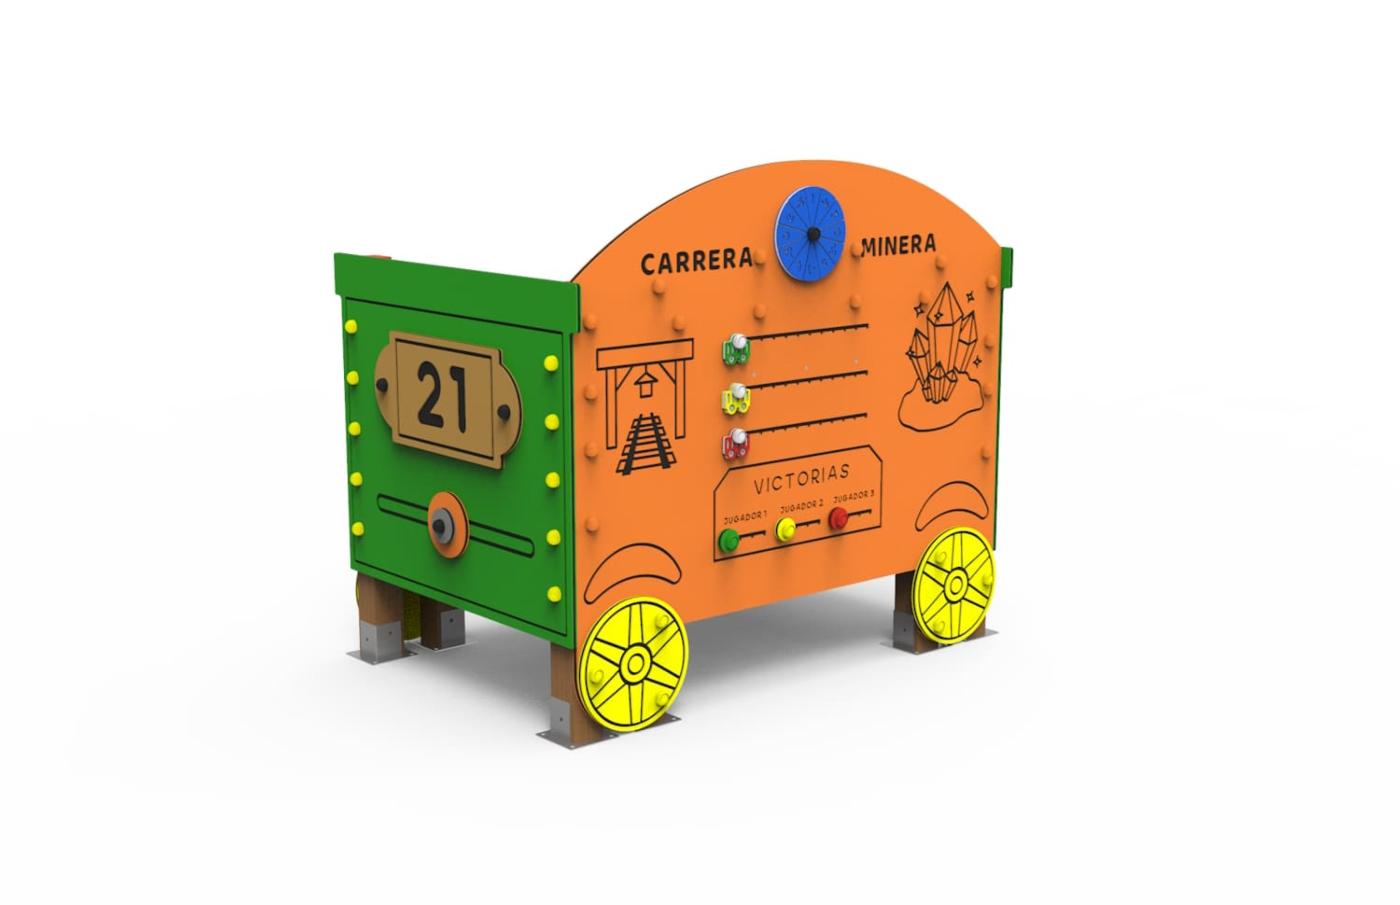 vagón del tren transiberiano de parque infantil homologado, con dos bancos en su interior 1